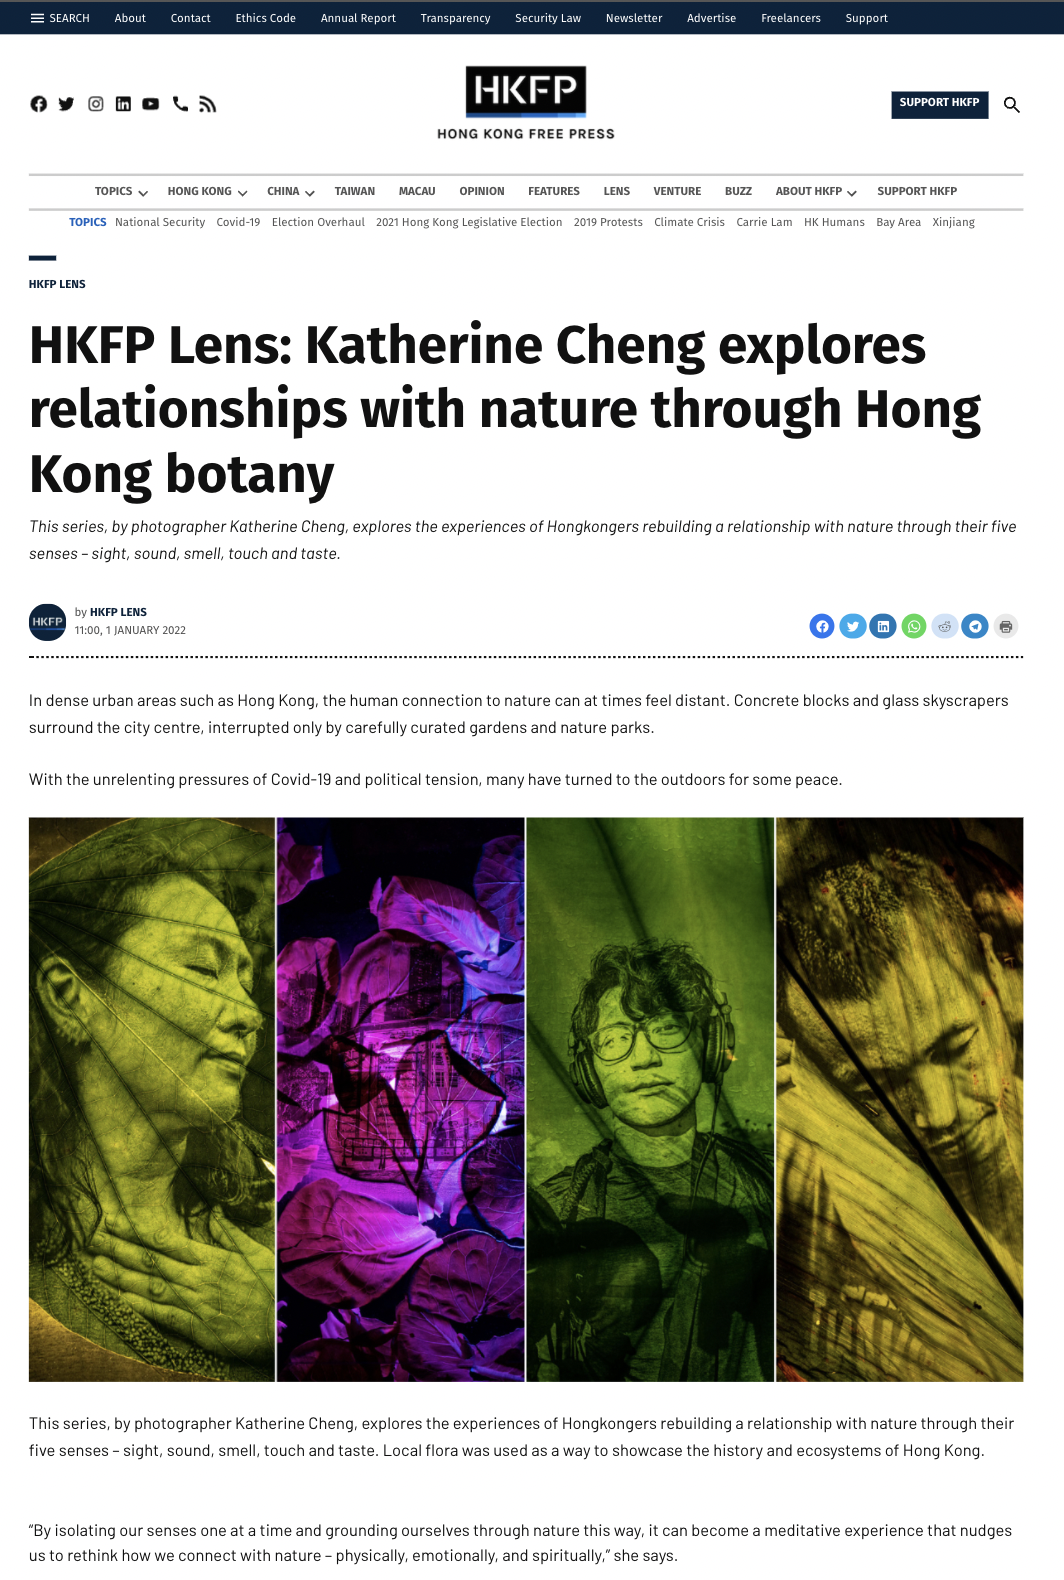 HKFP Lens: Hong Kong Botany